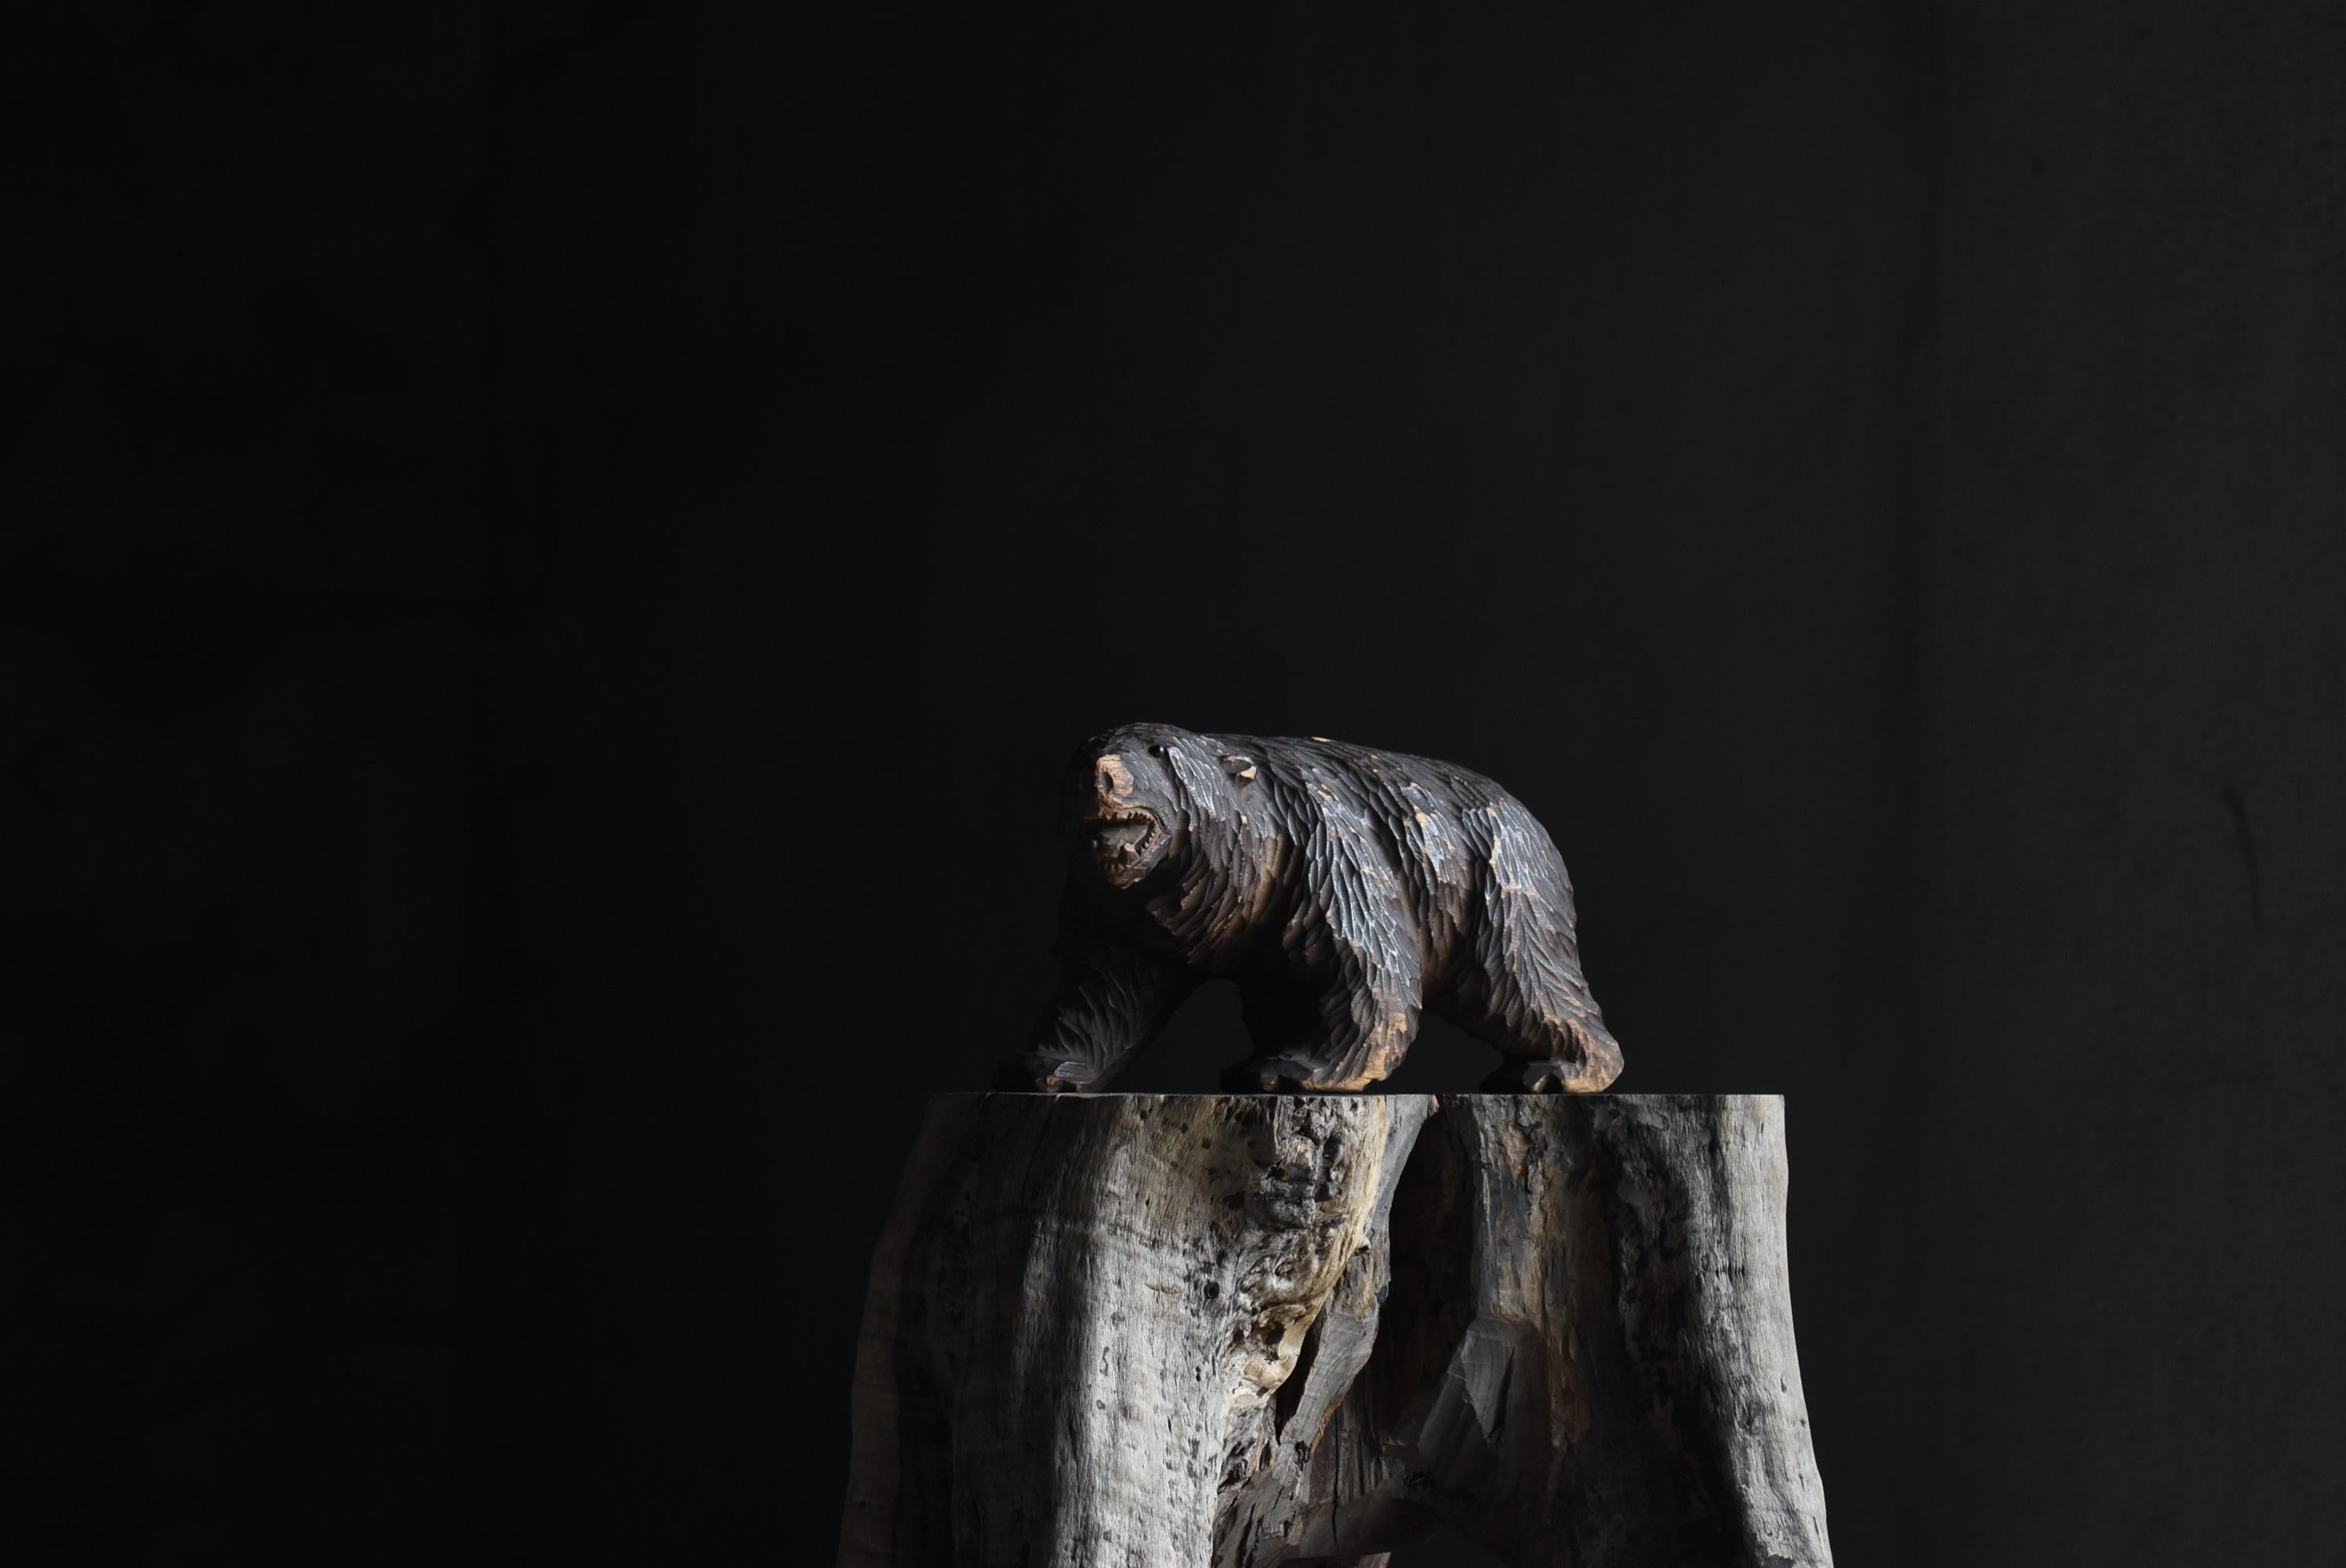 Il s'agit d'un artisanat en bois en forme d'ours.
Principalement fabriqués à Hokkaido.
Il s'agit d'une sculpture en bois réalisée entre 1930 et 1950.

Les yeux sont en verre.
Ce type de produit est rare au Japon.

Un ours digne avec une expression